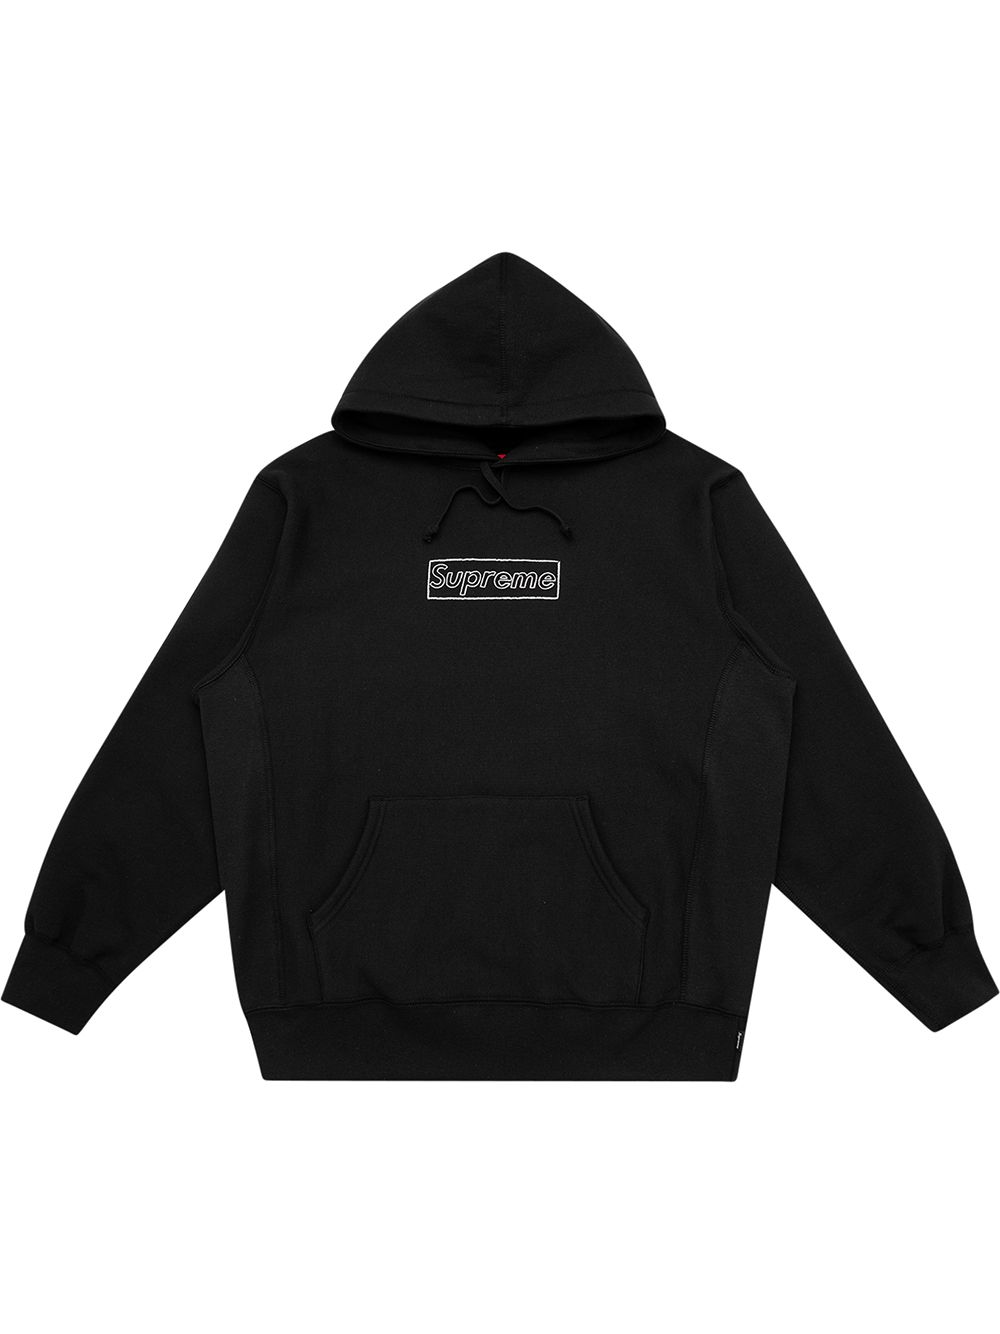 Supreme Kaws Chalk logo hoodie - Black von Supreme